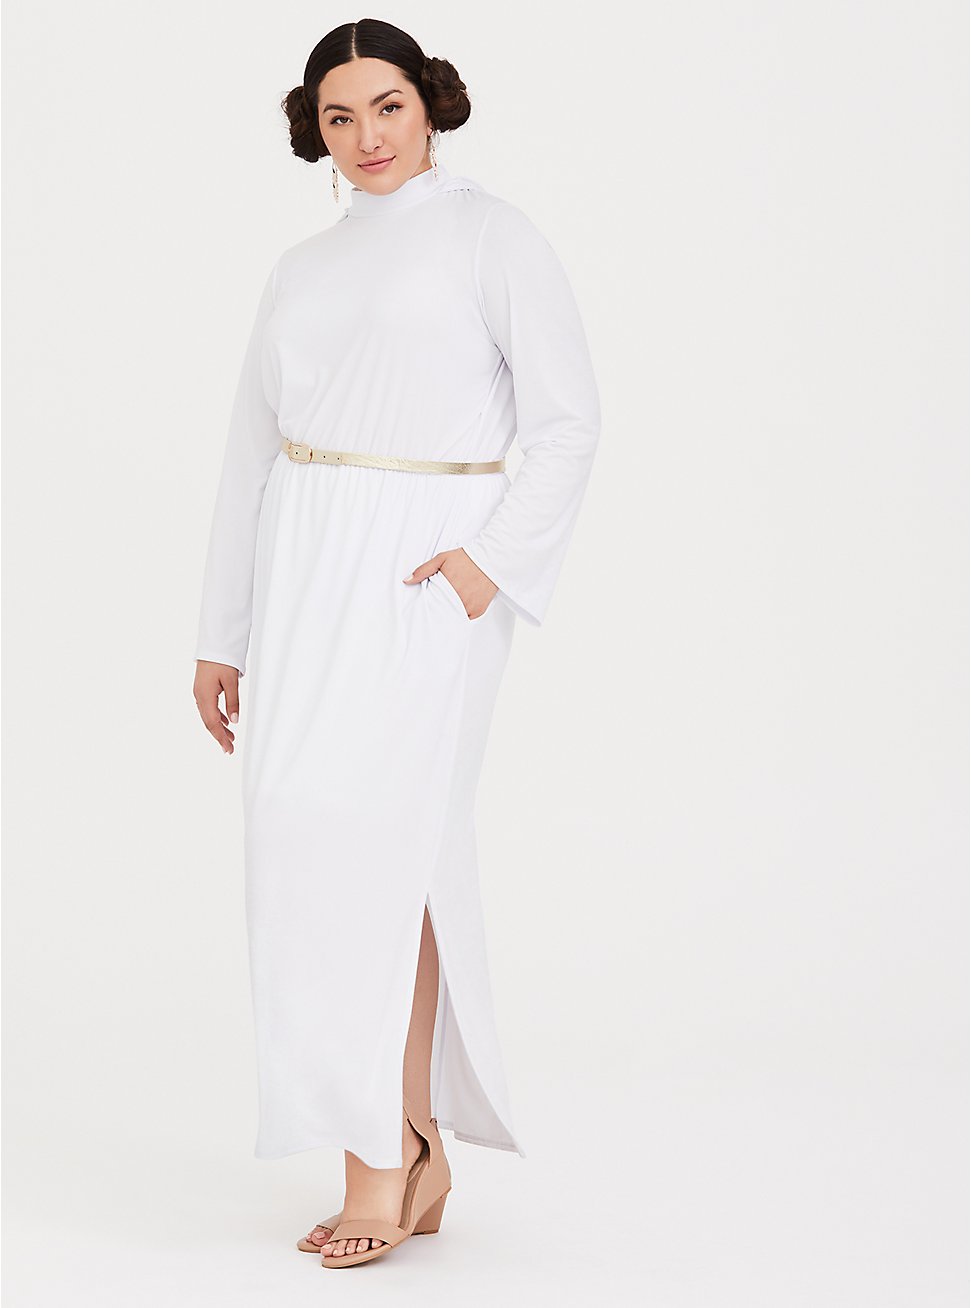 Plus Size Star Wars Princess Leia White Maxi Dress, WHITE, hi-res